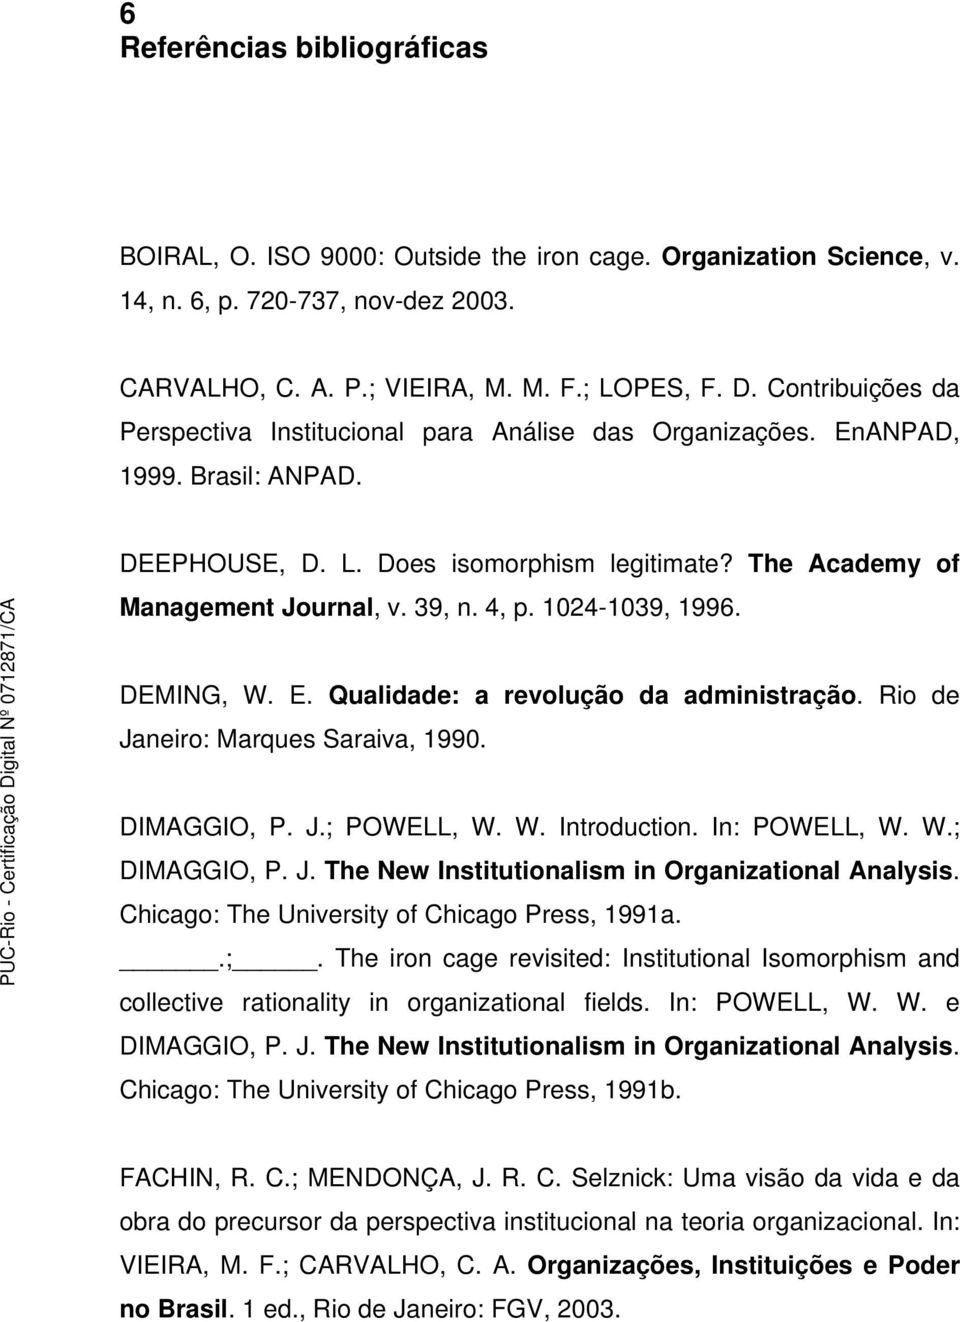 1024-1039, 1996. DEMING, W. E. Qualidade: a revolução da administração. Rio de Janeiro: Marques Saraiva, 1990. DIMAGGIO, P. J.; POWELL, W. W. Introduction. In: POWELL, W. W.; DIMAGGIO, P. J. The New Institutionalism in Organizational Analysis.